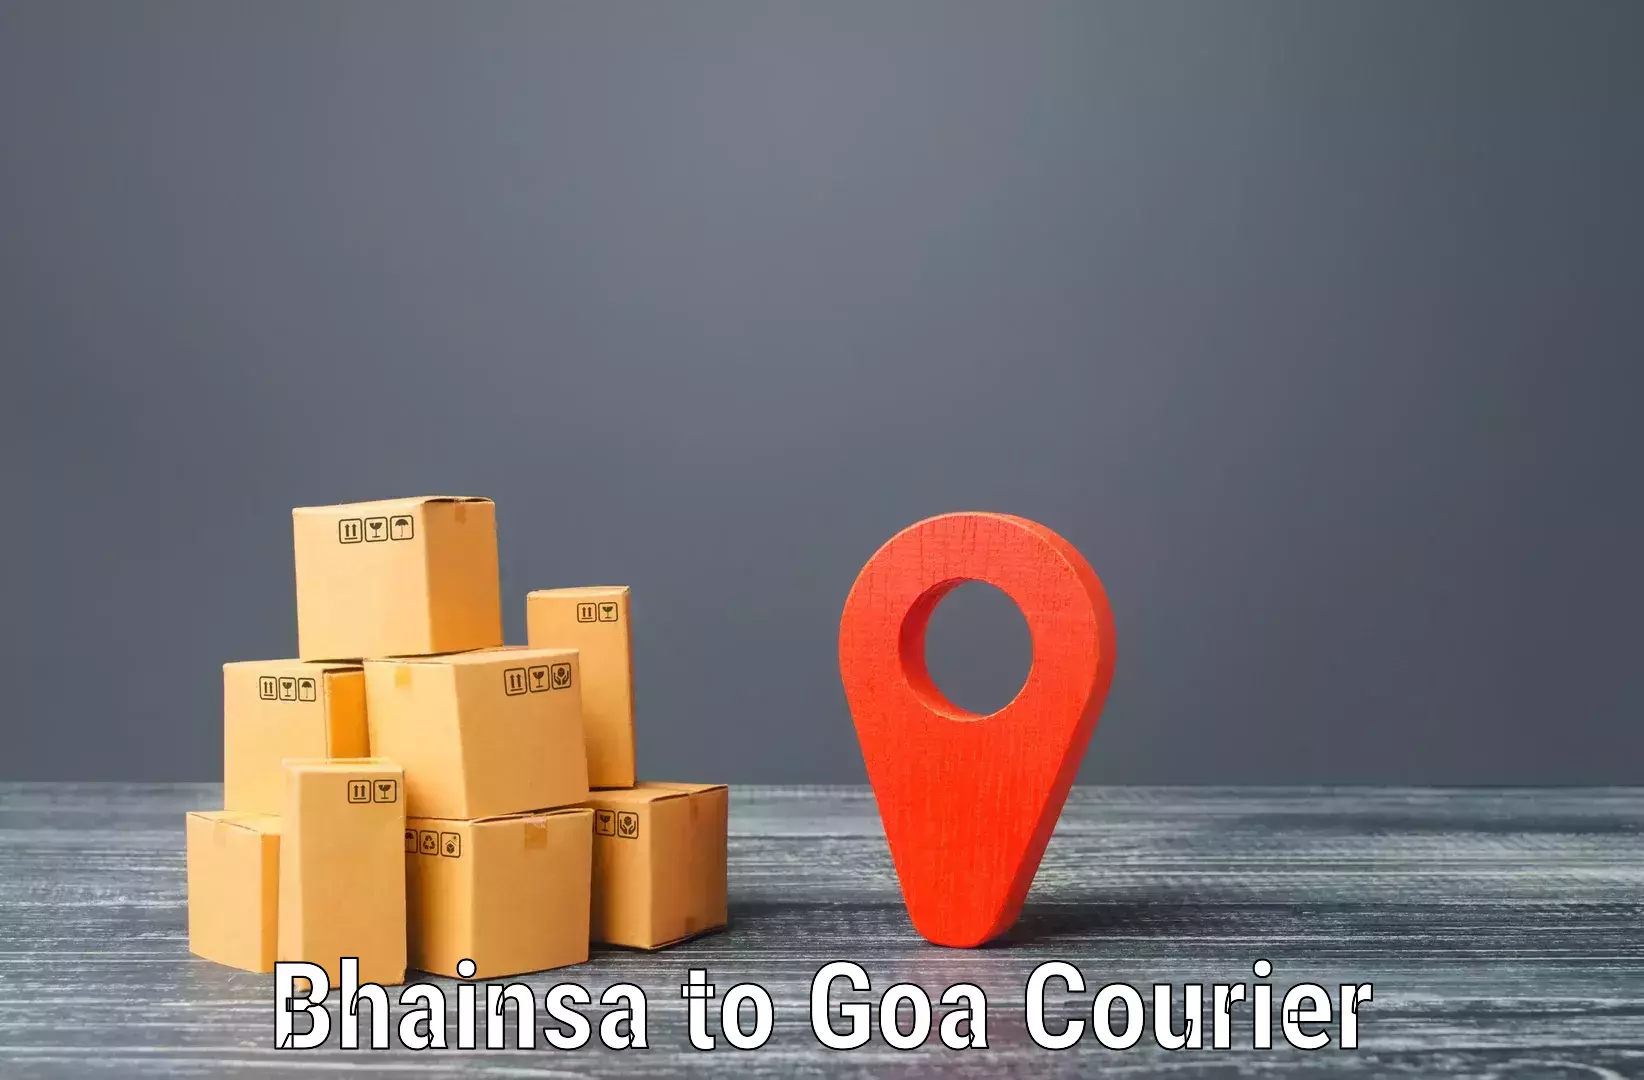 24-hour courier service Bhainsa to South Goa